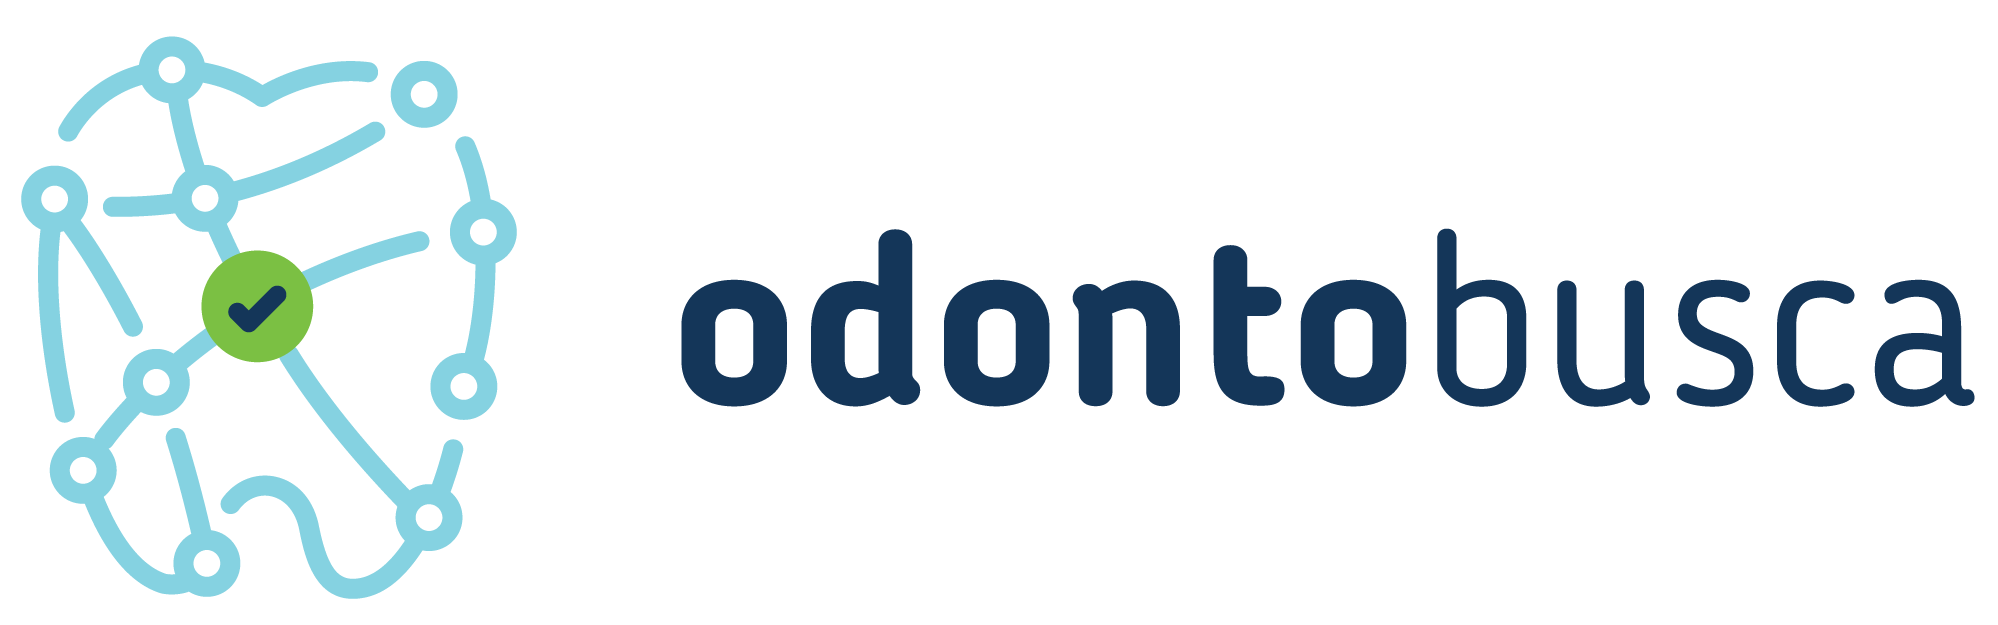 Logo Odontobusca